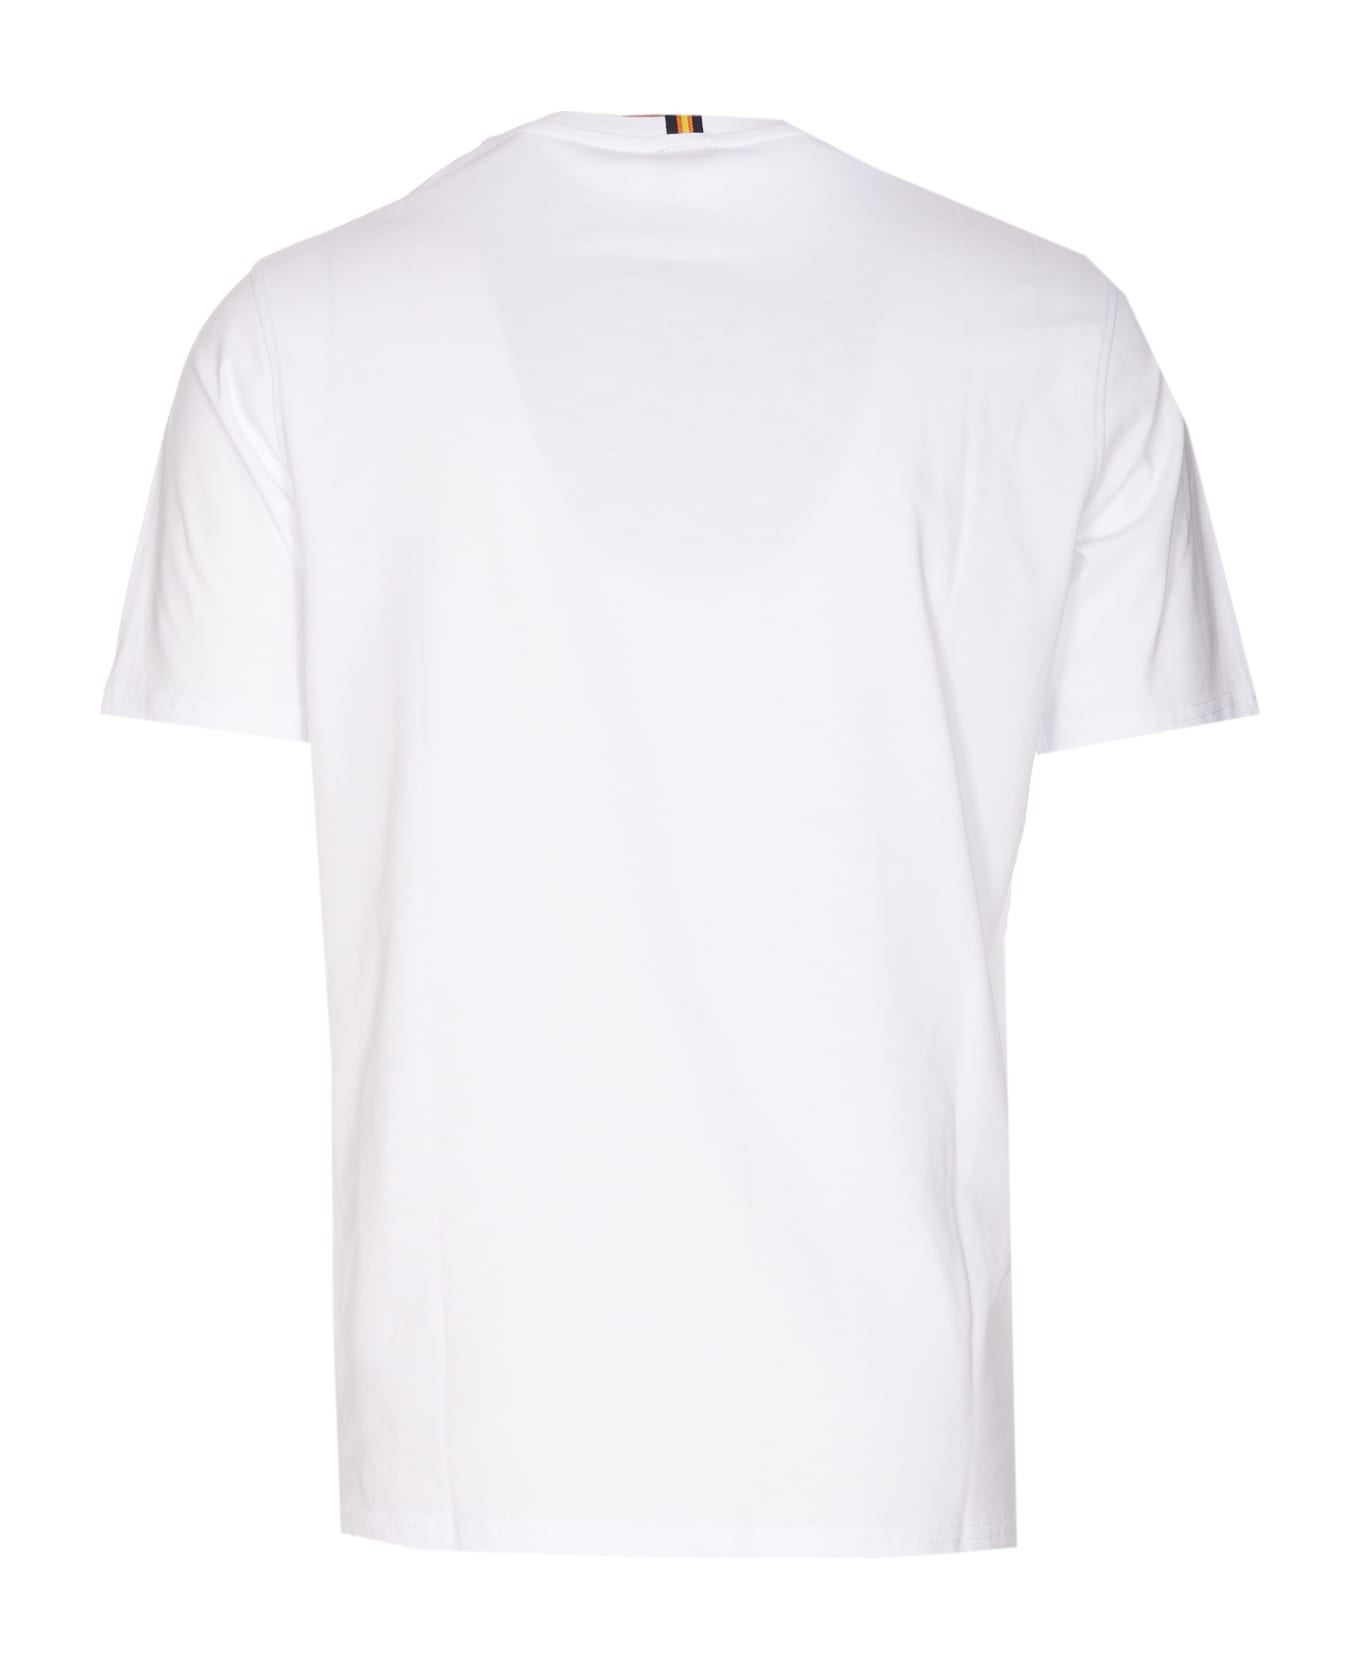 K-Way Odom Typo Logo T-shirt - White シャツ